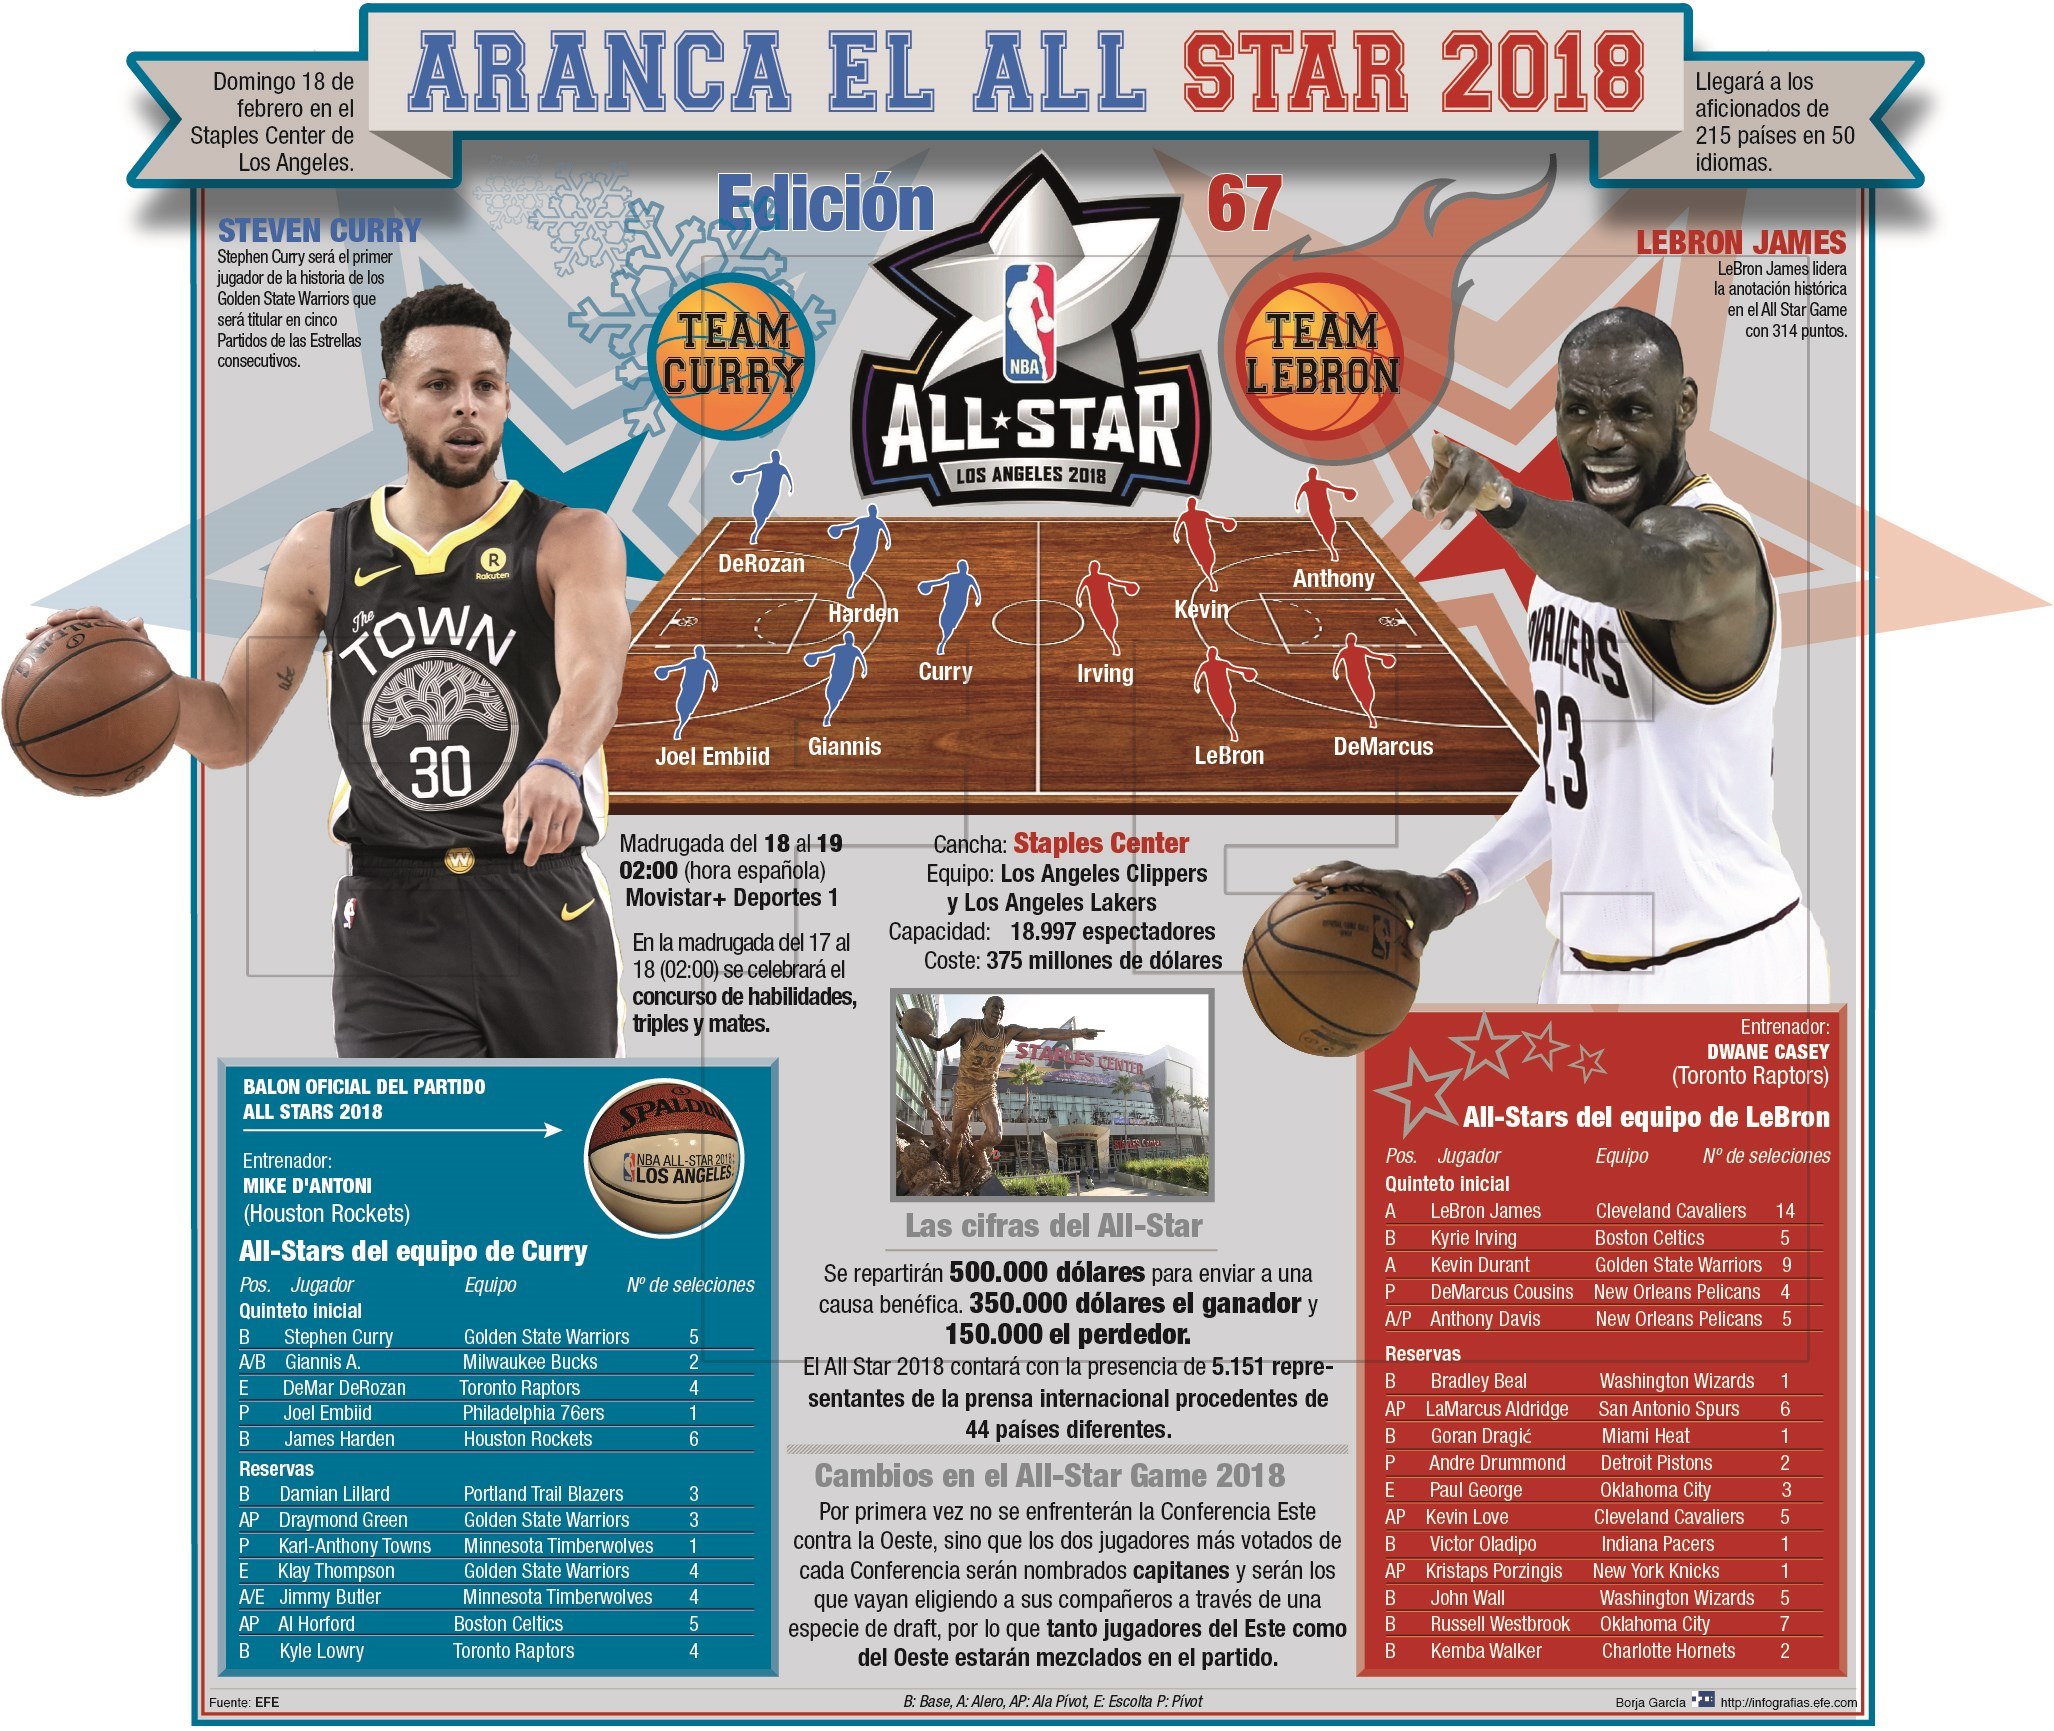 El All Star Game 2018 de la NBA tendrá lugar en el Staples Center de Los Angeles